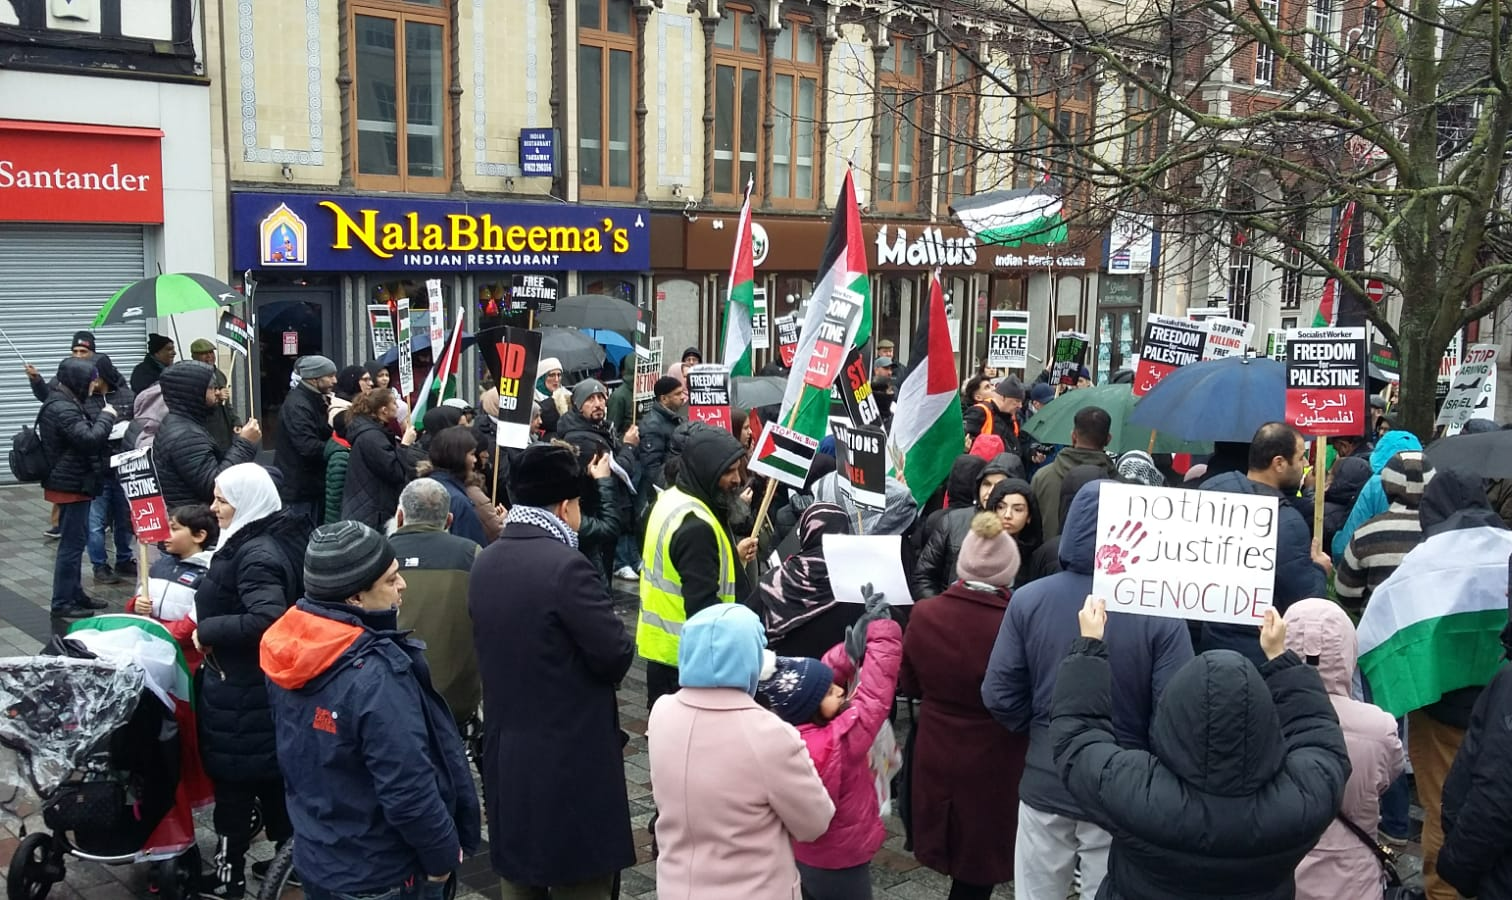 Protesto internacional liderado por organizações sediadas no Reino Unido visam pressionar Israel a ‘acabar com a ocupação e desmantelar o apartheid’